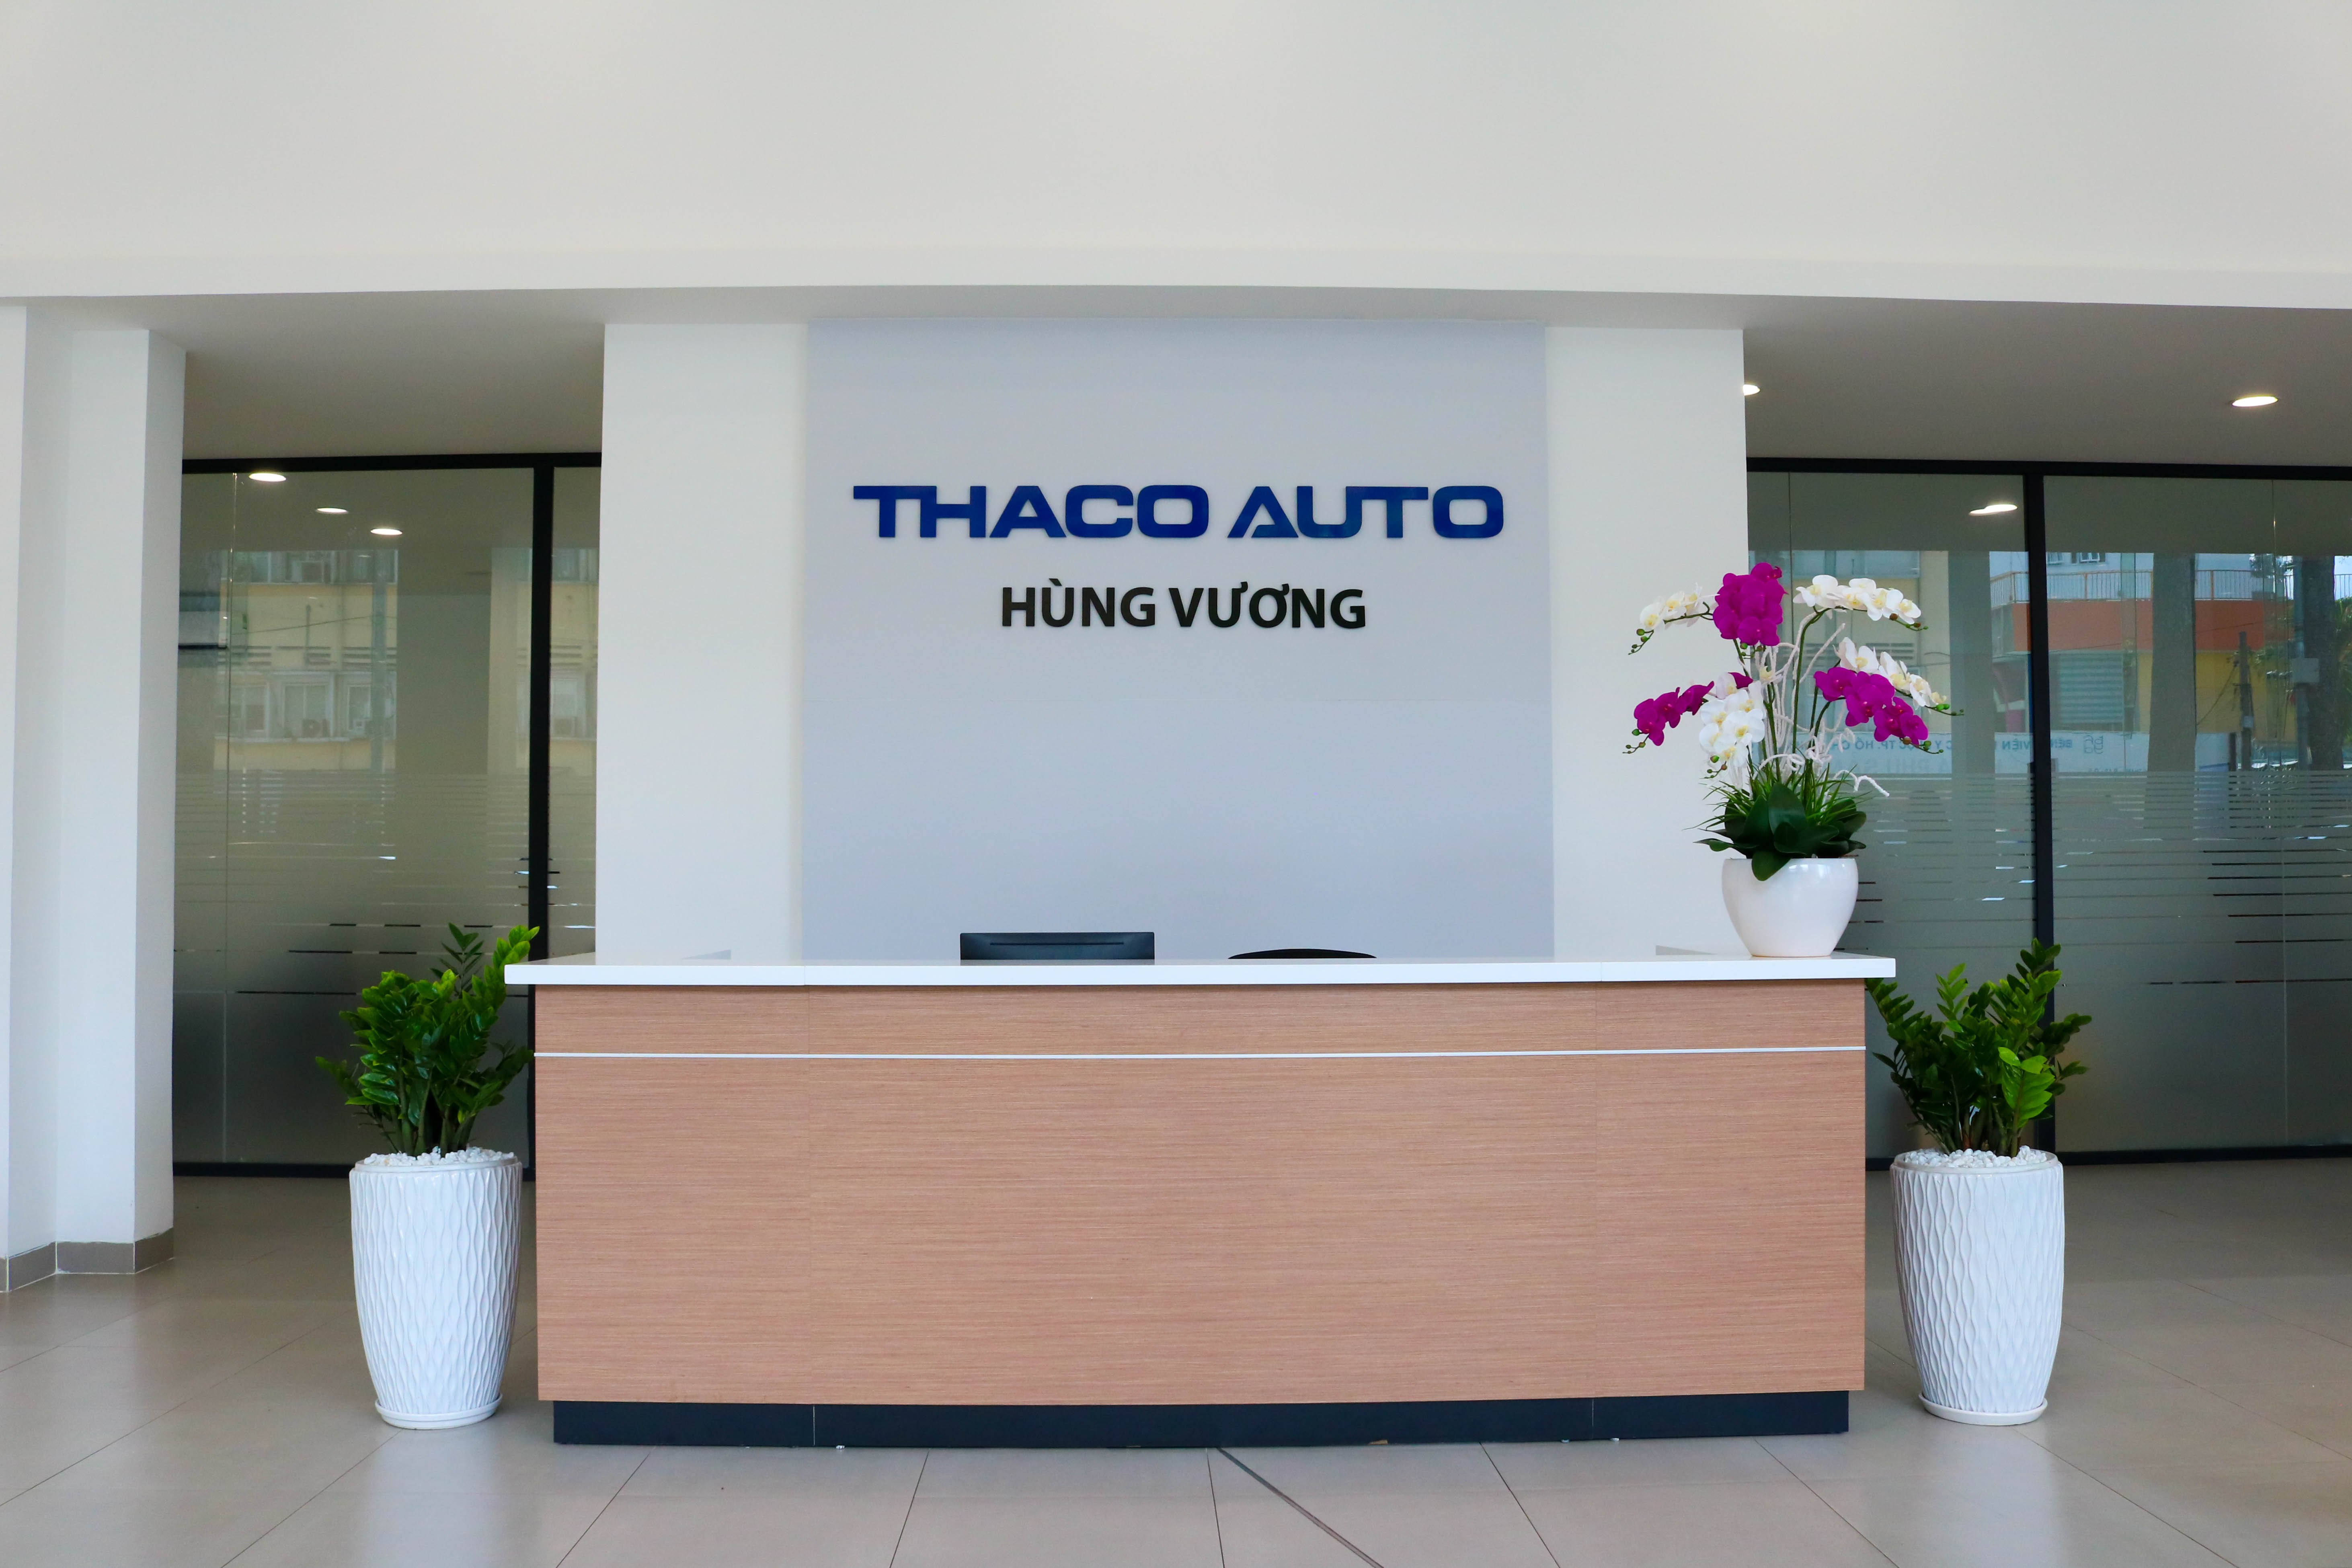 THACO AUTO là thương hiệu xe hơi nổi tiếng và được tin tưởng nhất tại Việt Nam. Hãy cùng chiêm ngưỡng những hình ảnh chất lượng cao về các dòng xe ấn tượng của THACO AUTO để hiểu tại sao thương hiệu này lại trở thành người bạn đồng hành đáng tin cậy của mọi người.